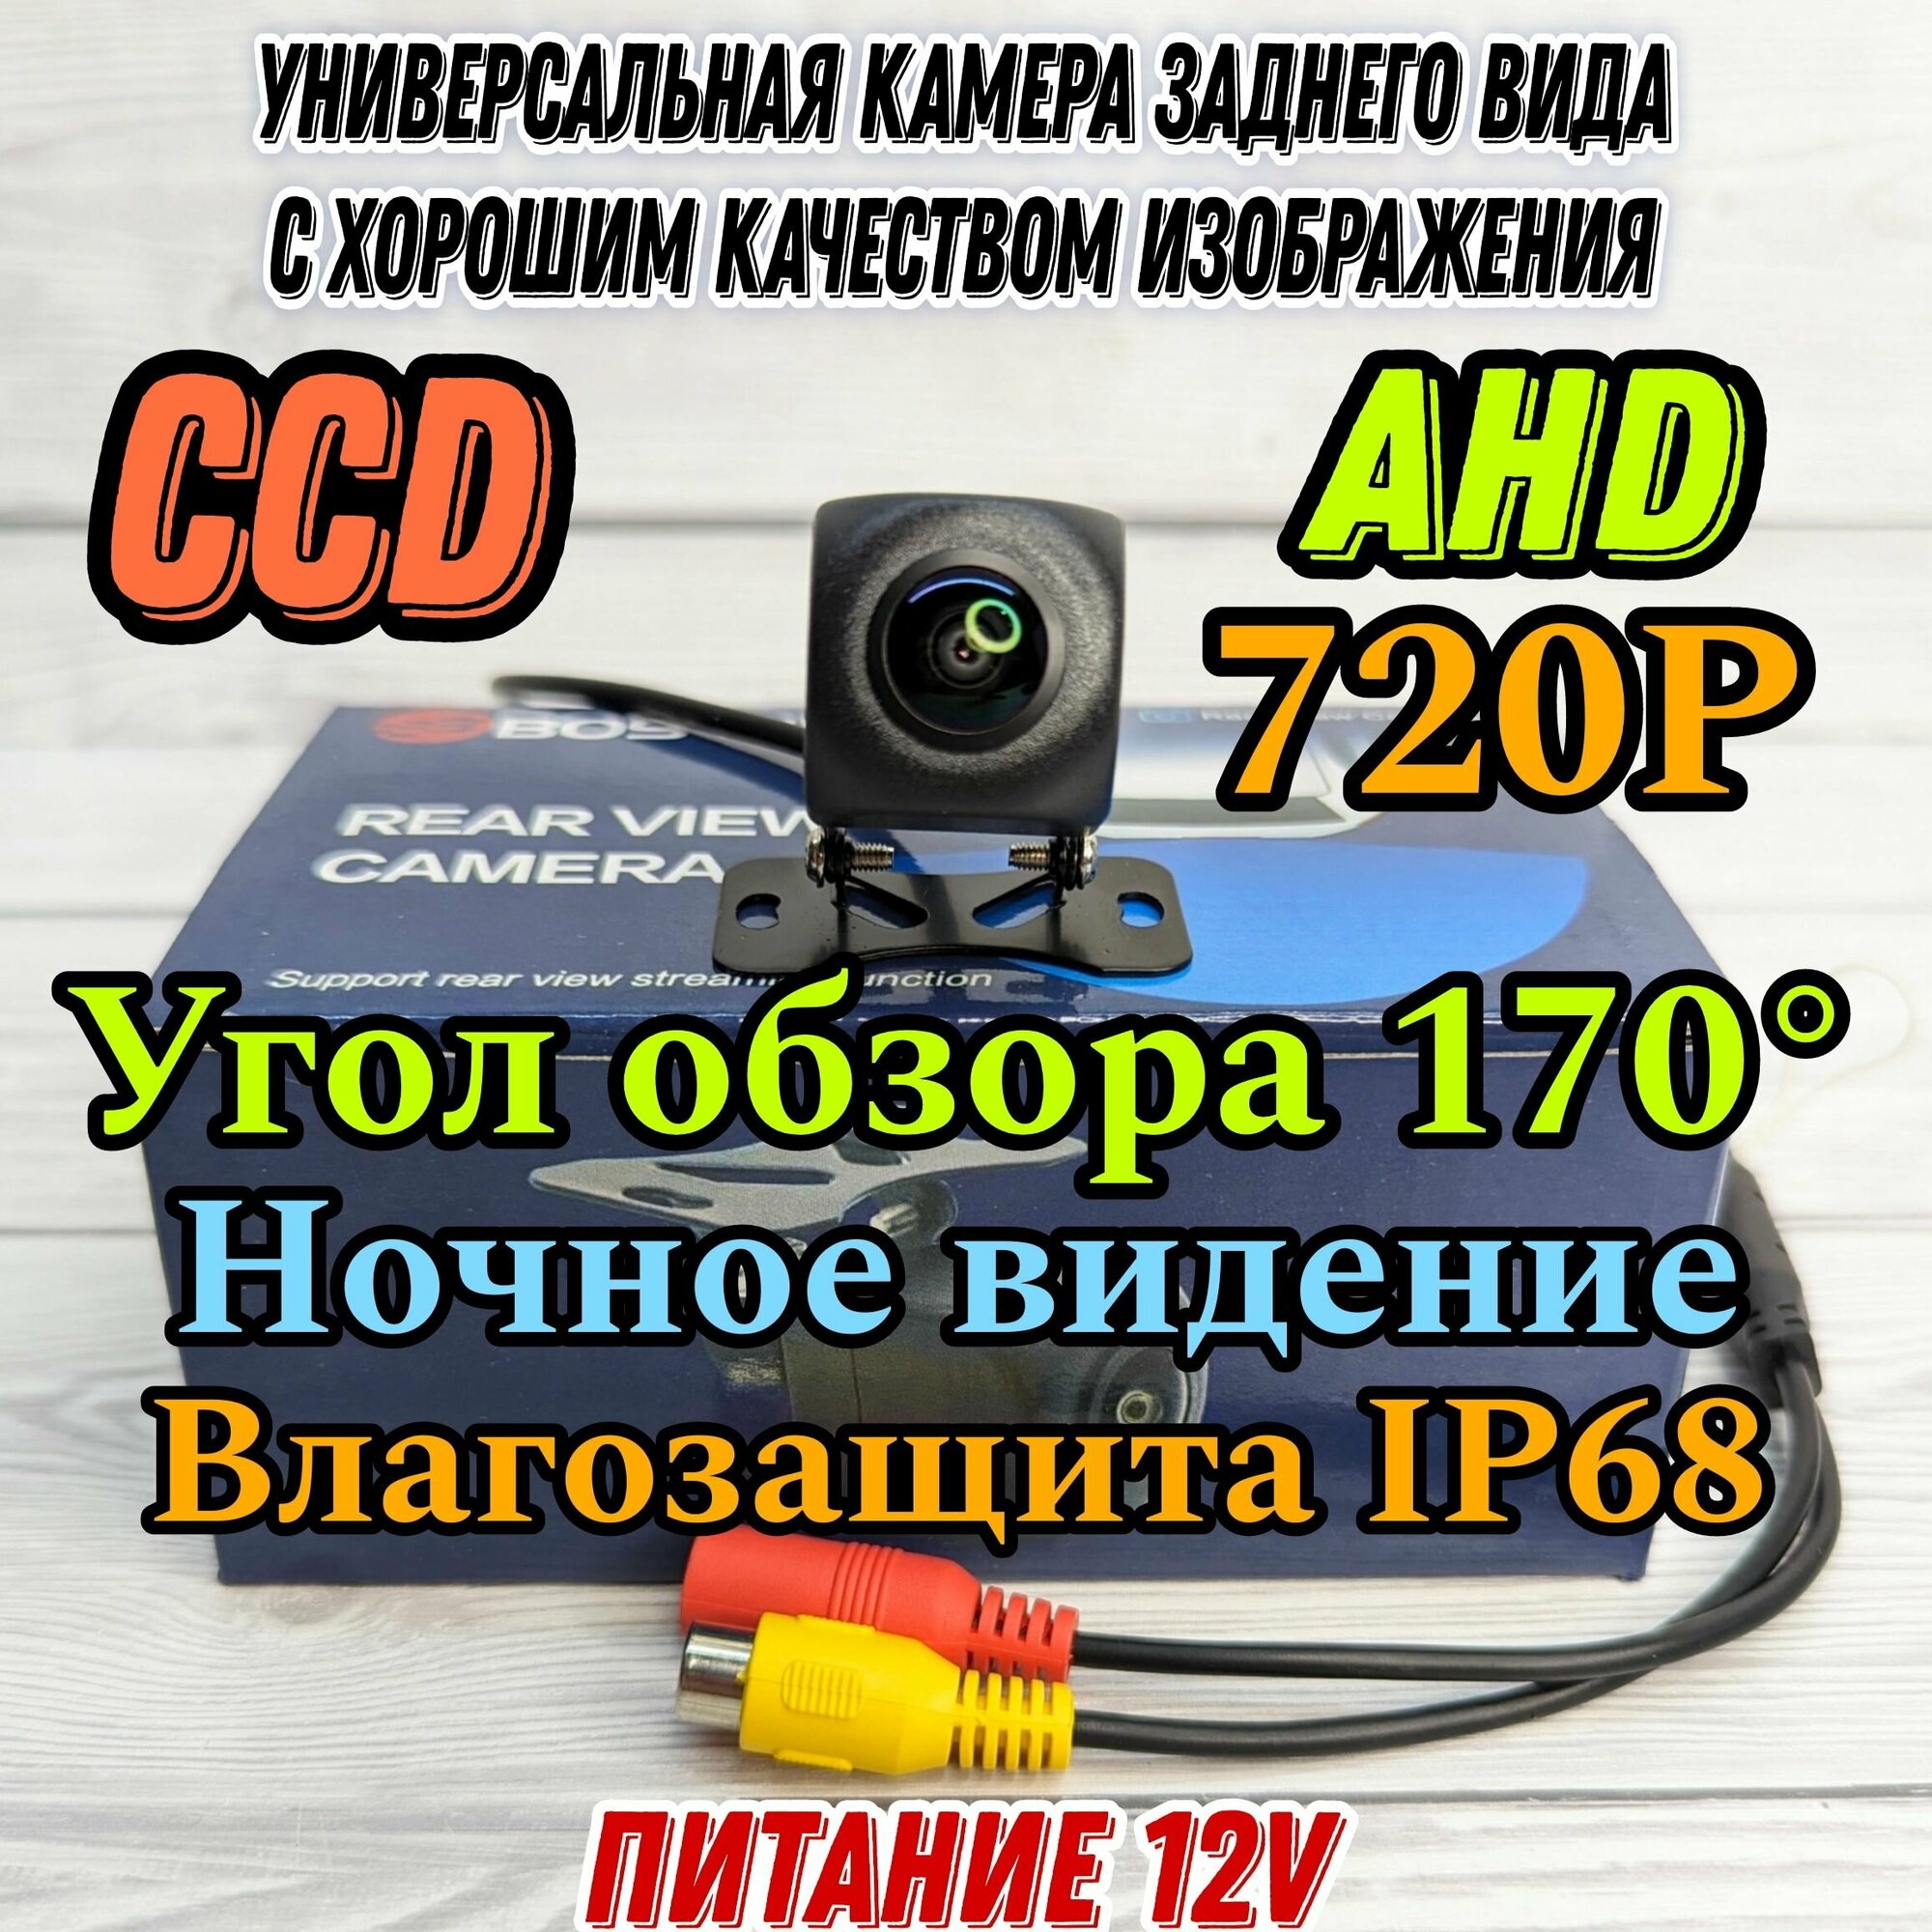 Камера заднего вида для автомобиля BOS-MINI, CCD/AHD 720P, ночной режим, поддерживает линии разметки, полный комплект.